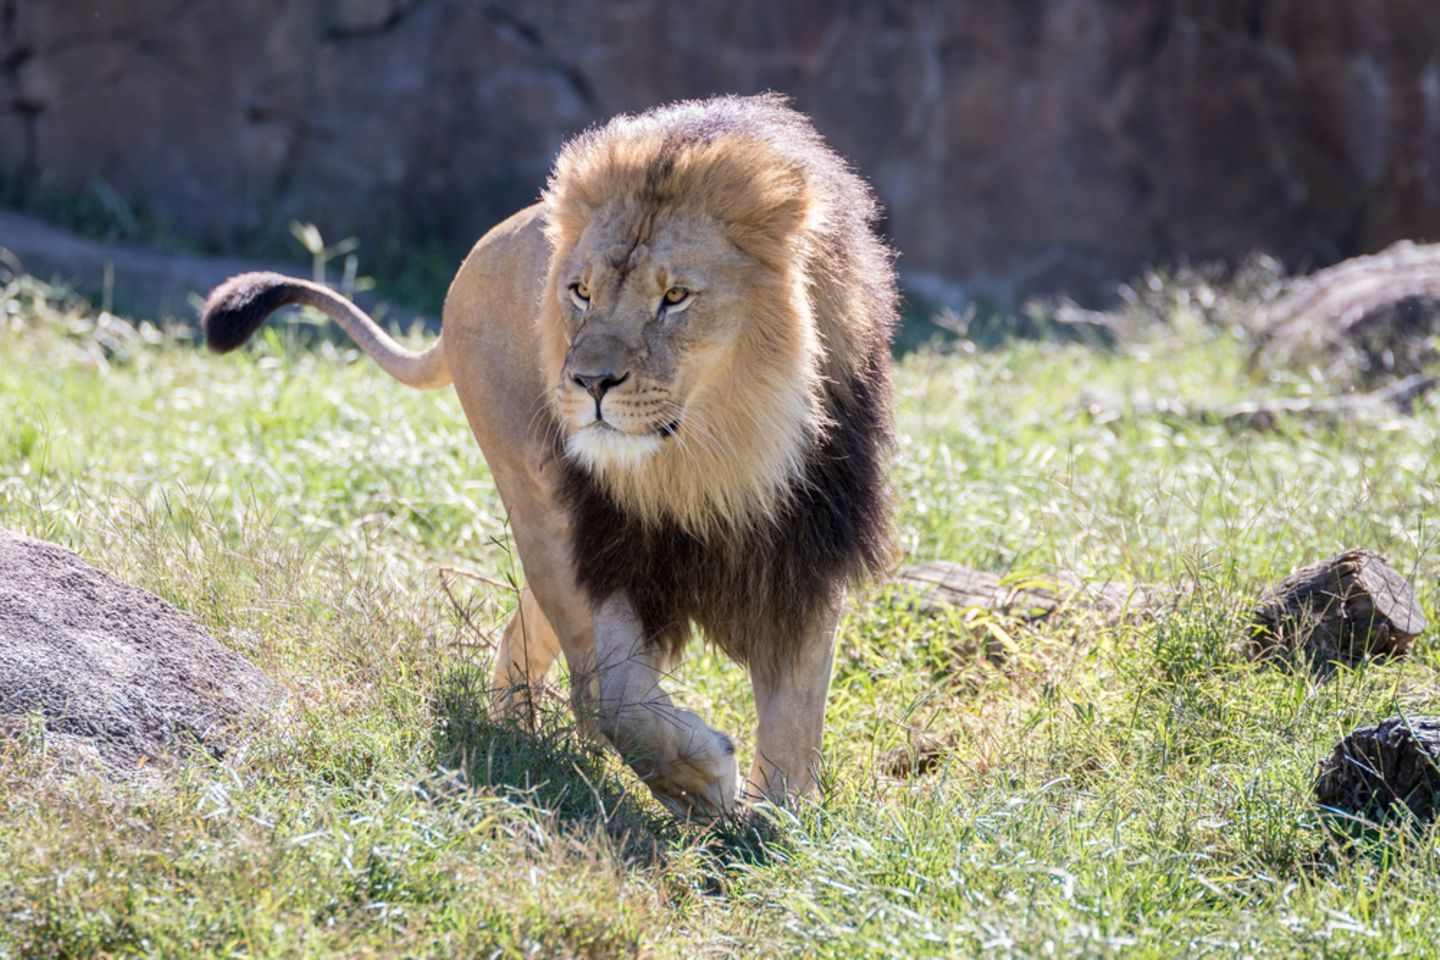 Löwen und Tiger aus Zoo ausgebrochen? Es war falscher Alarm!